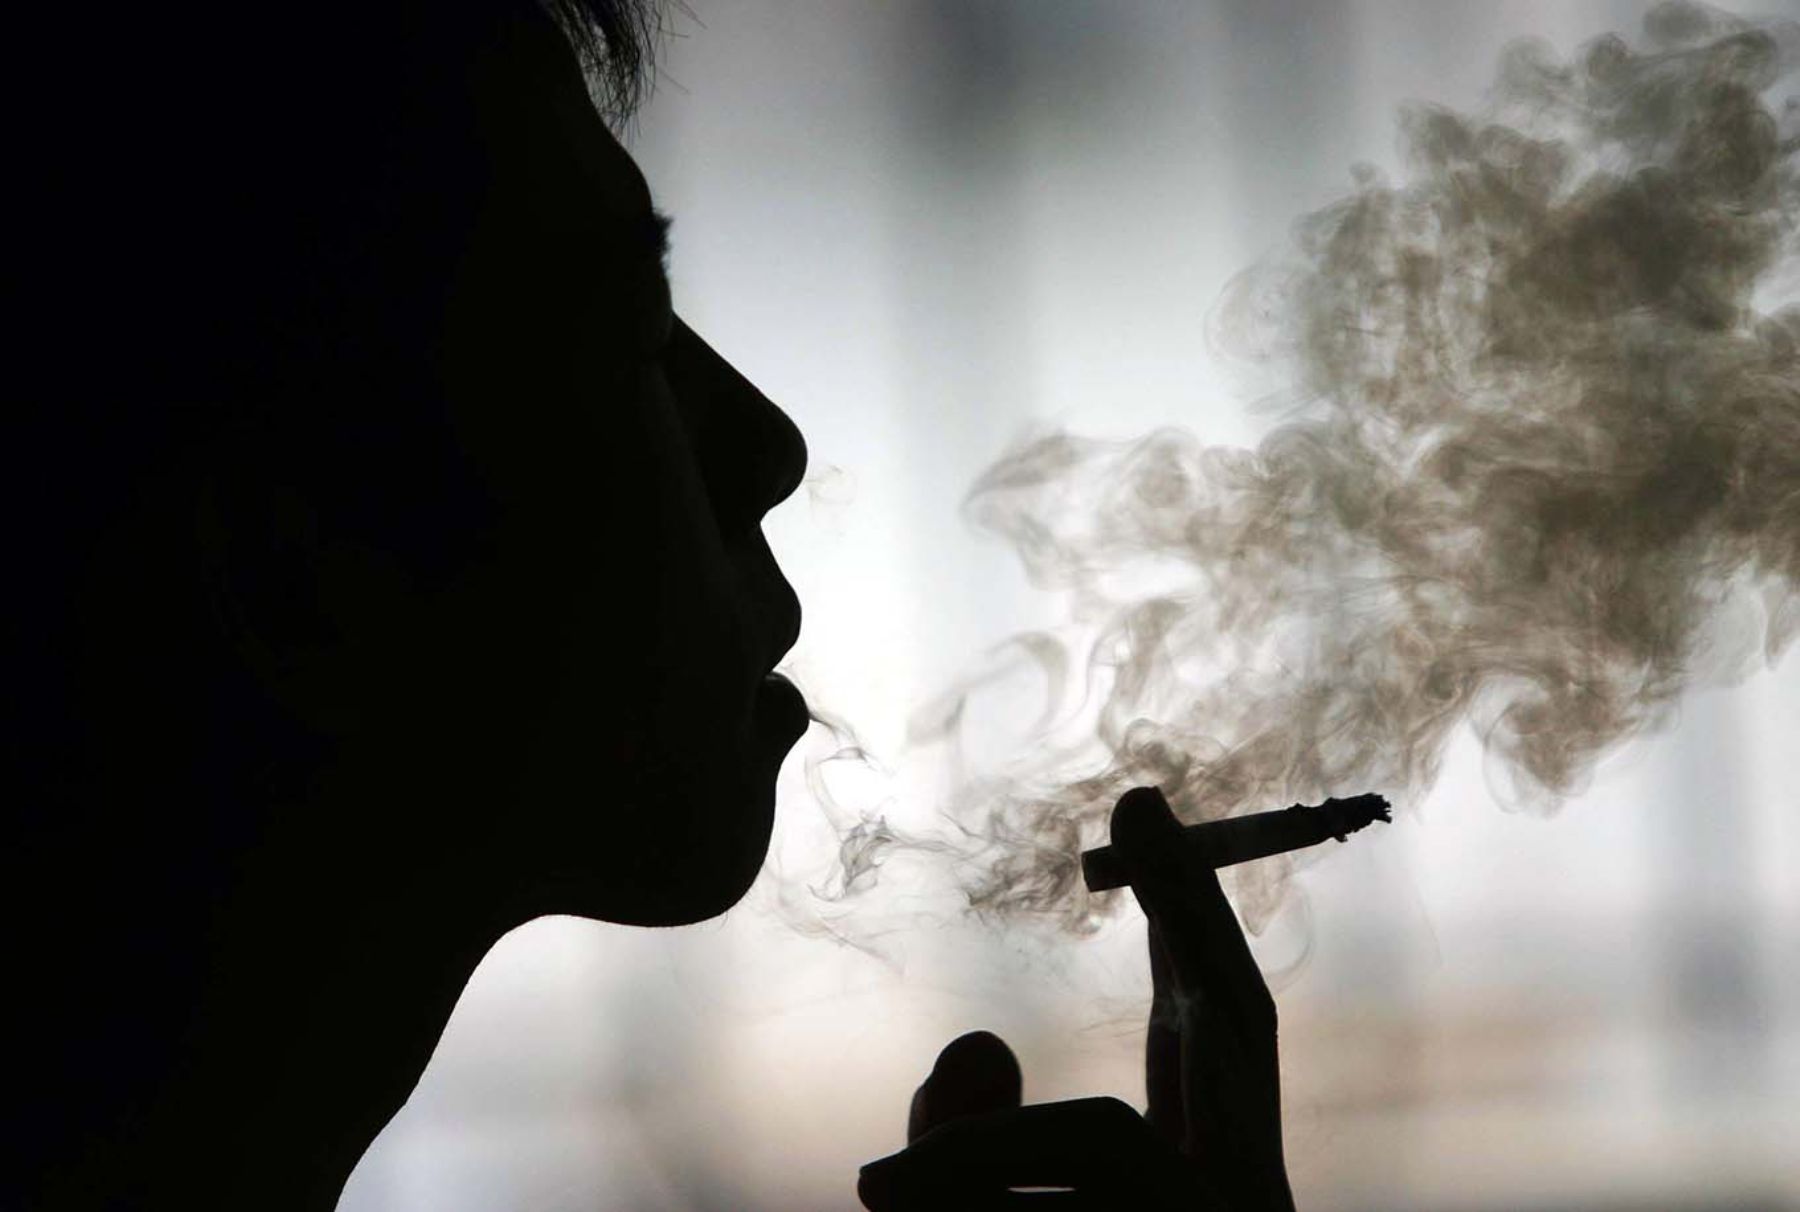 Minsa: 8% de peruanos inicia el consumo de tabaco a los 15 años de edad